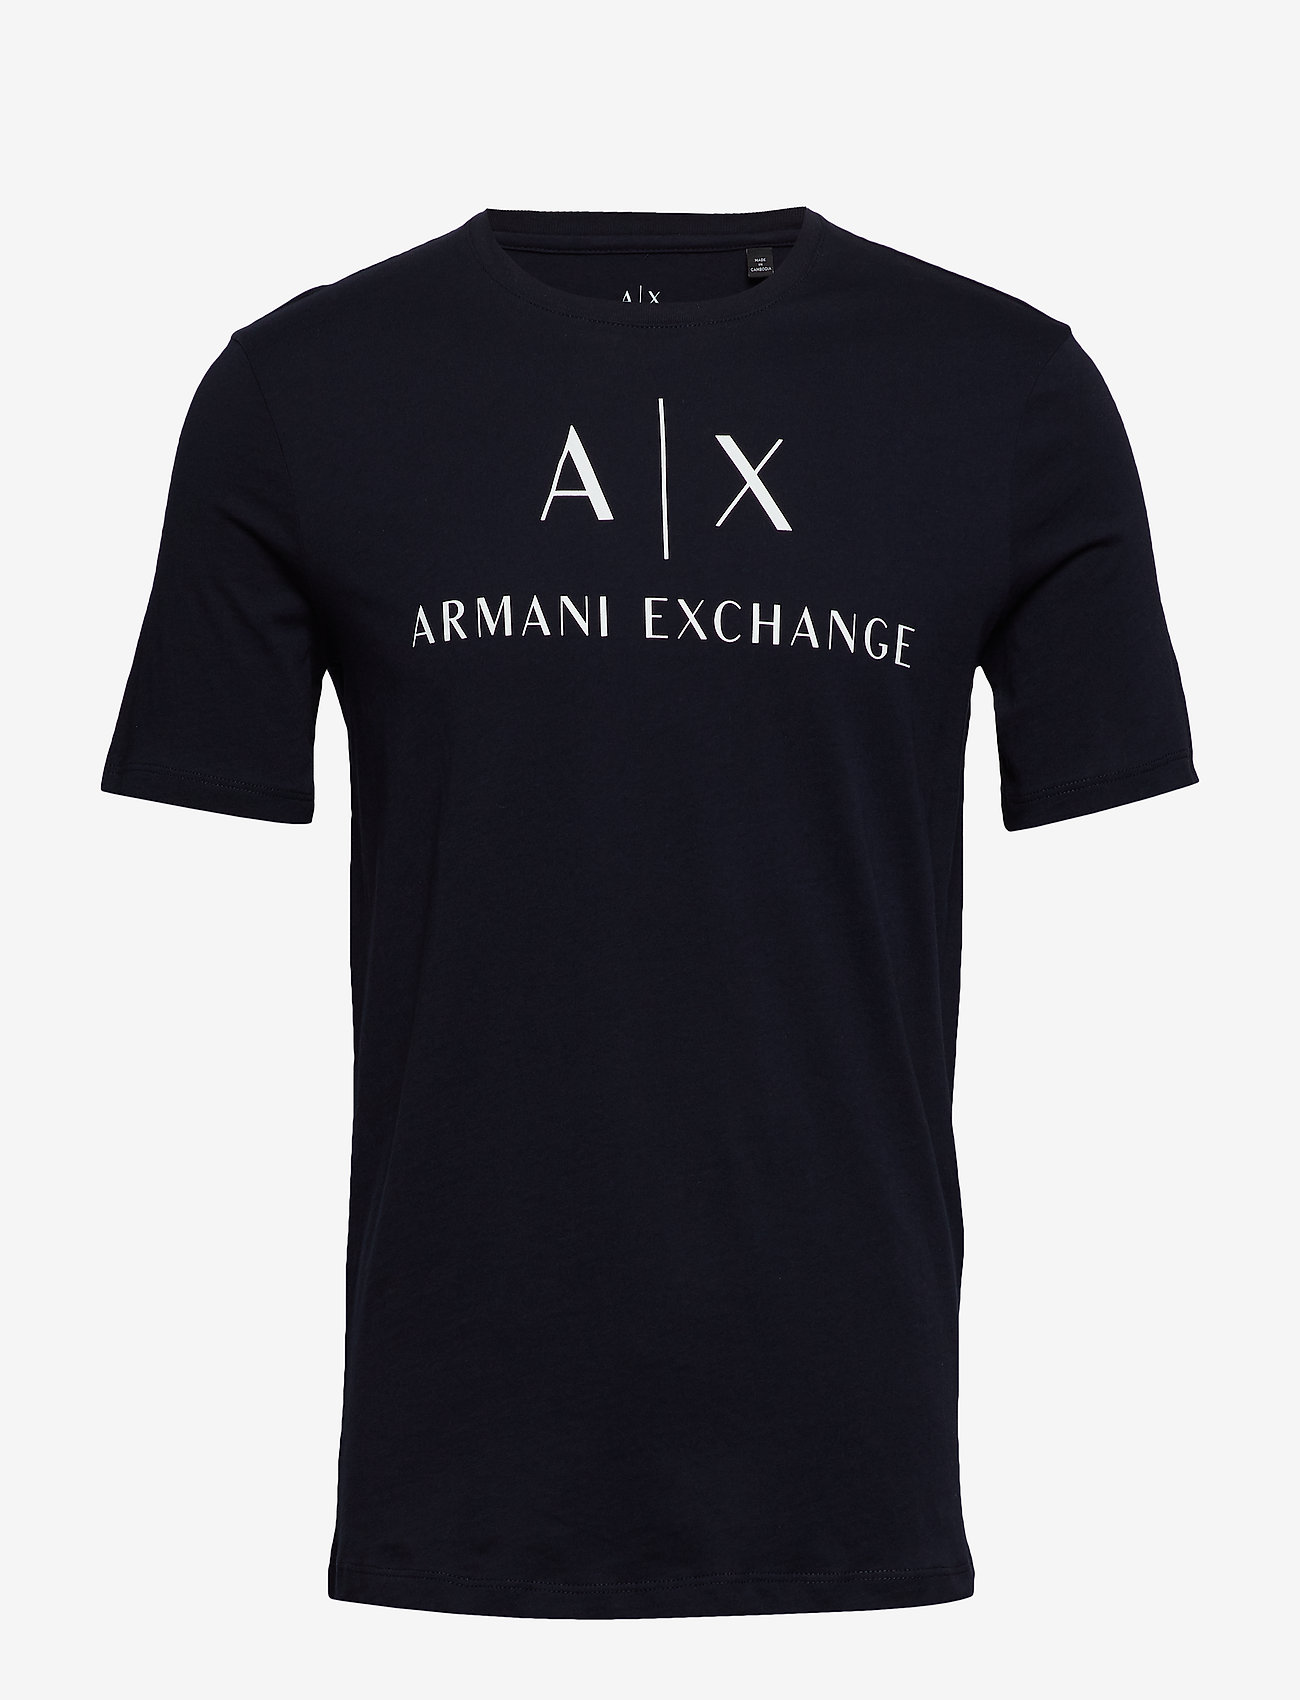 Armani Exchange - T-SHIRT - najniższe ceny - navy - 0